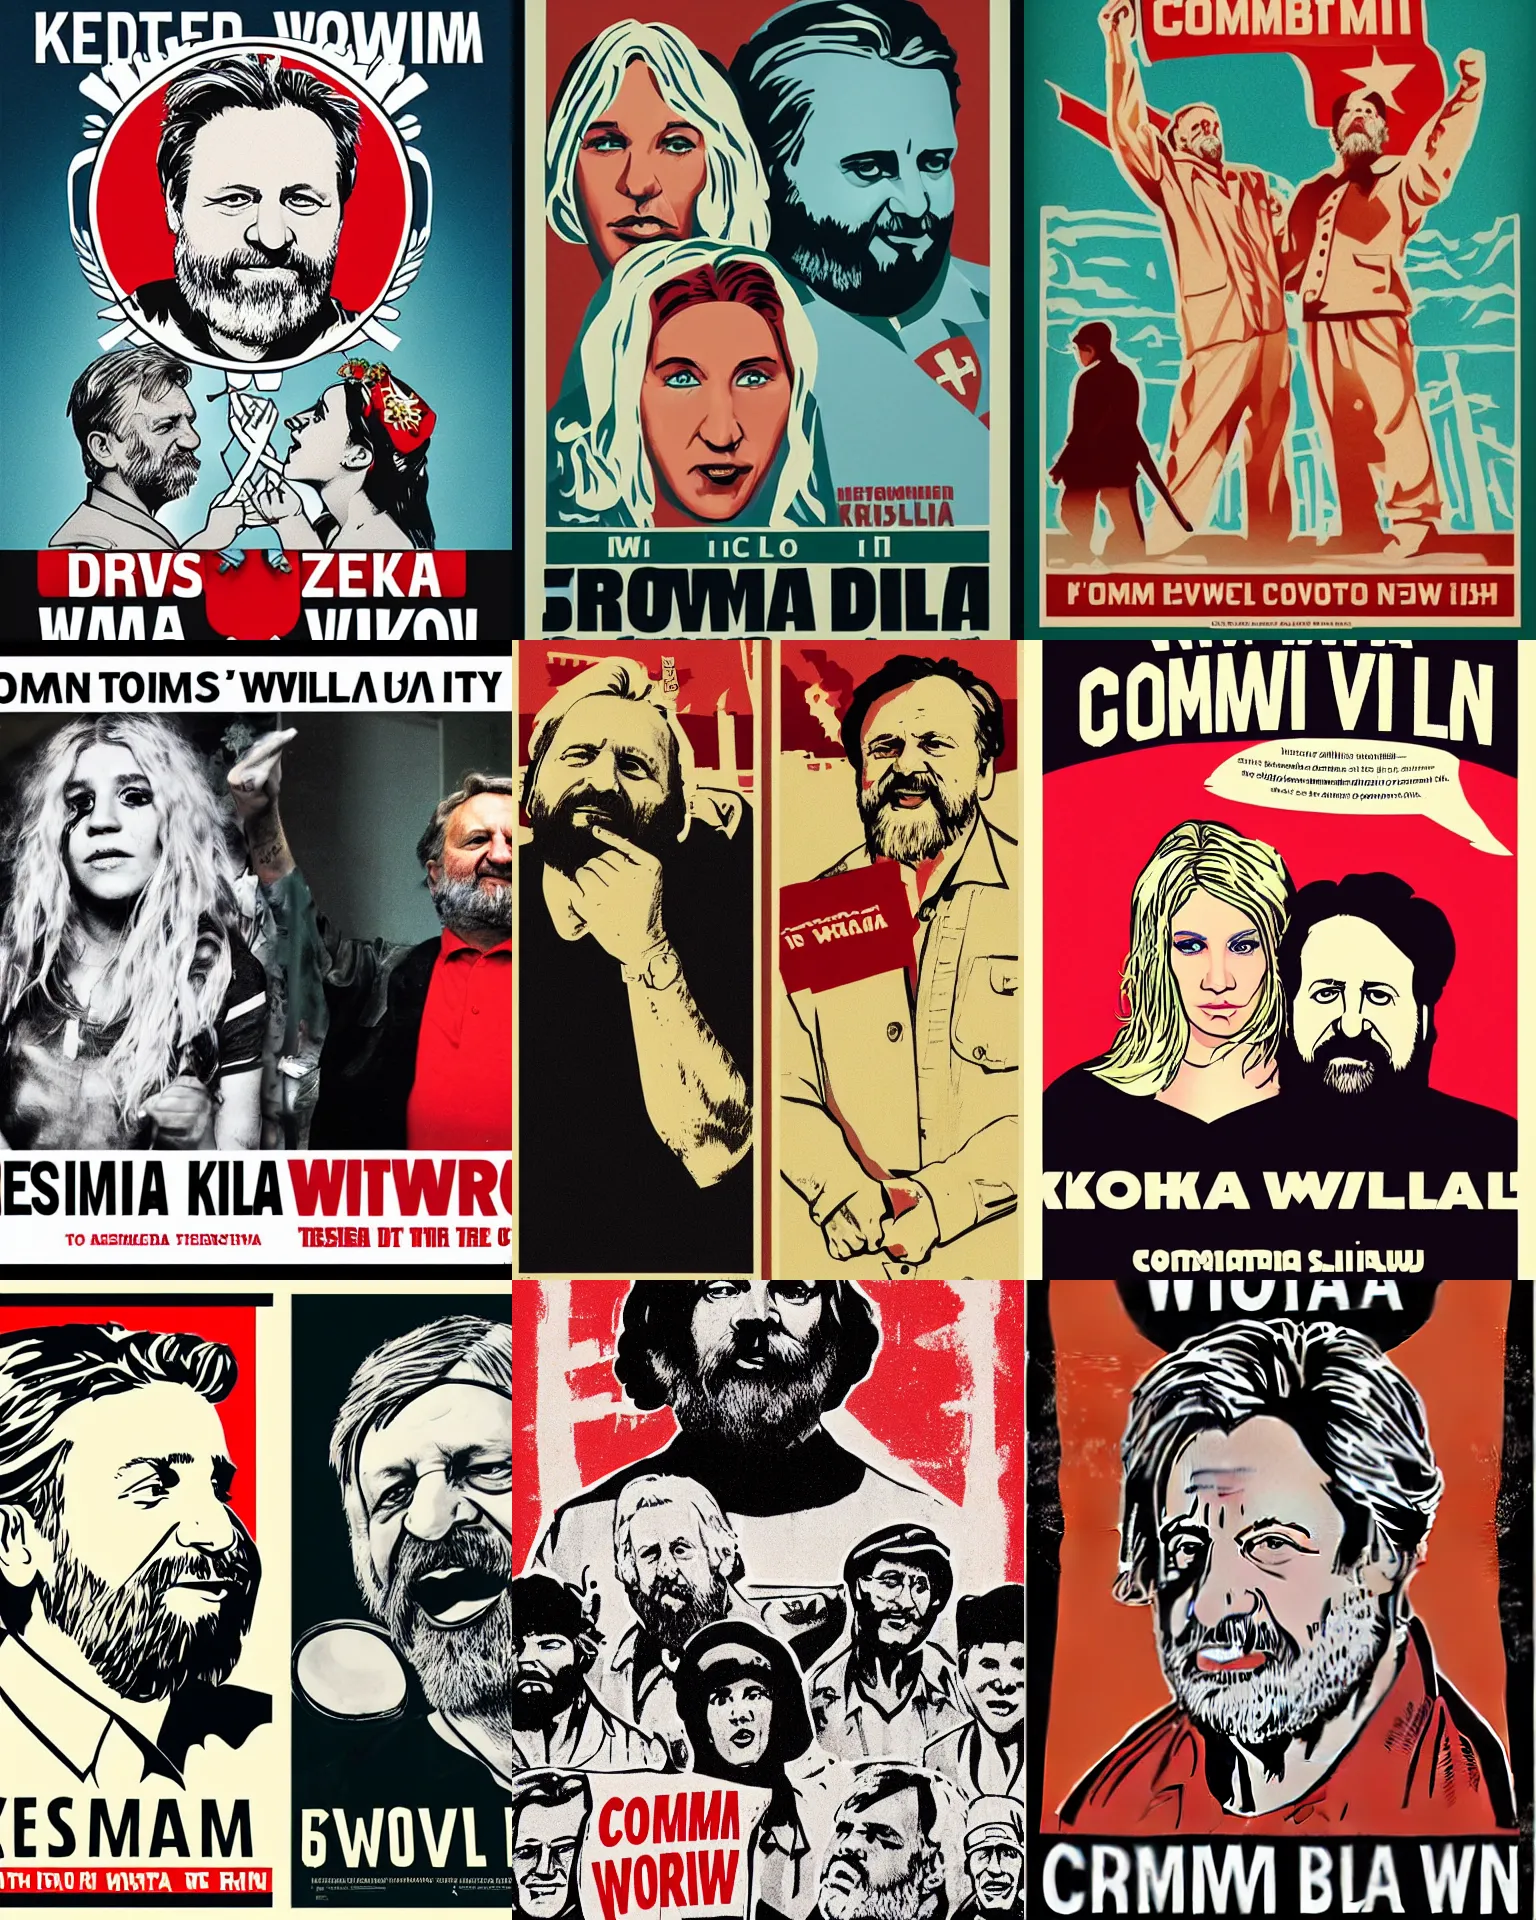 Prompt: ' communism will win.'propaganda poster featuring kesha and slavoj zizek.